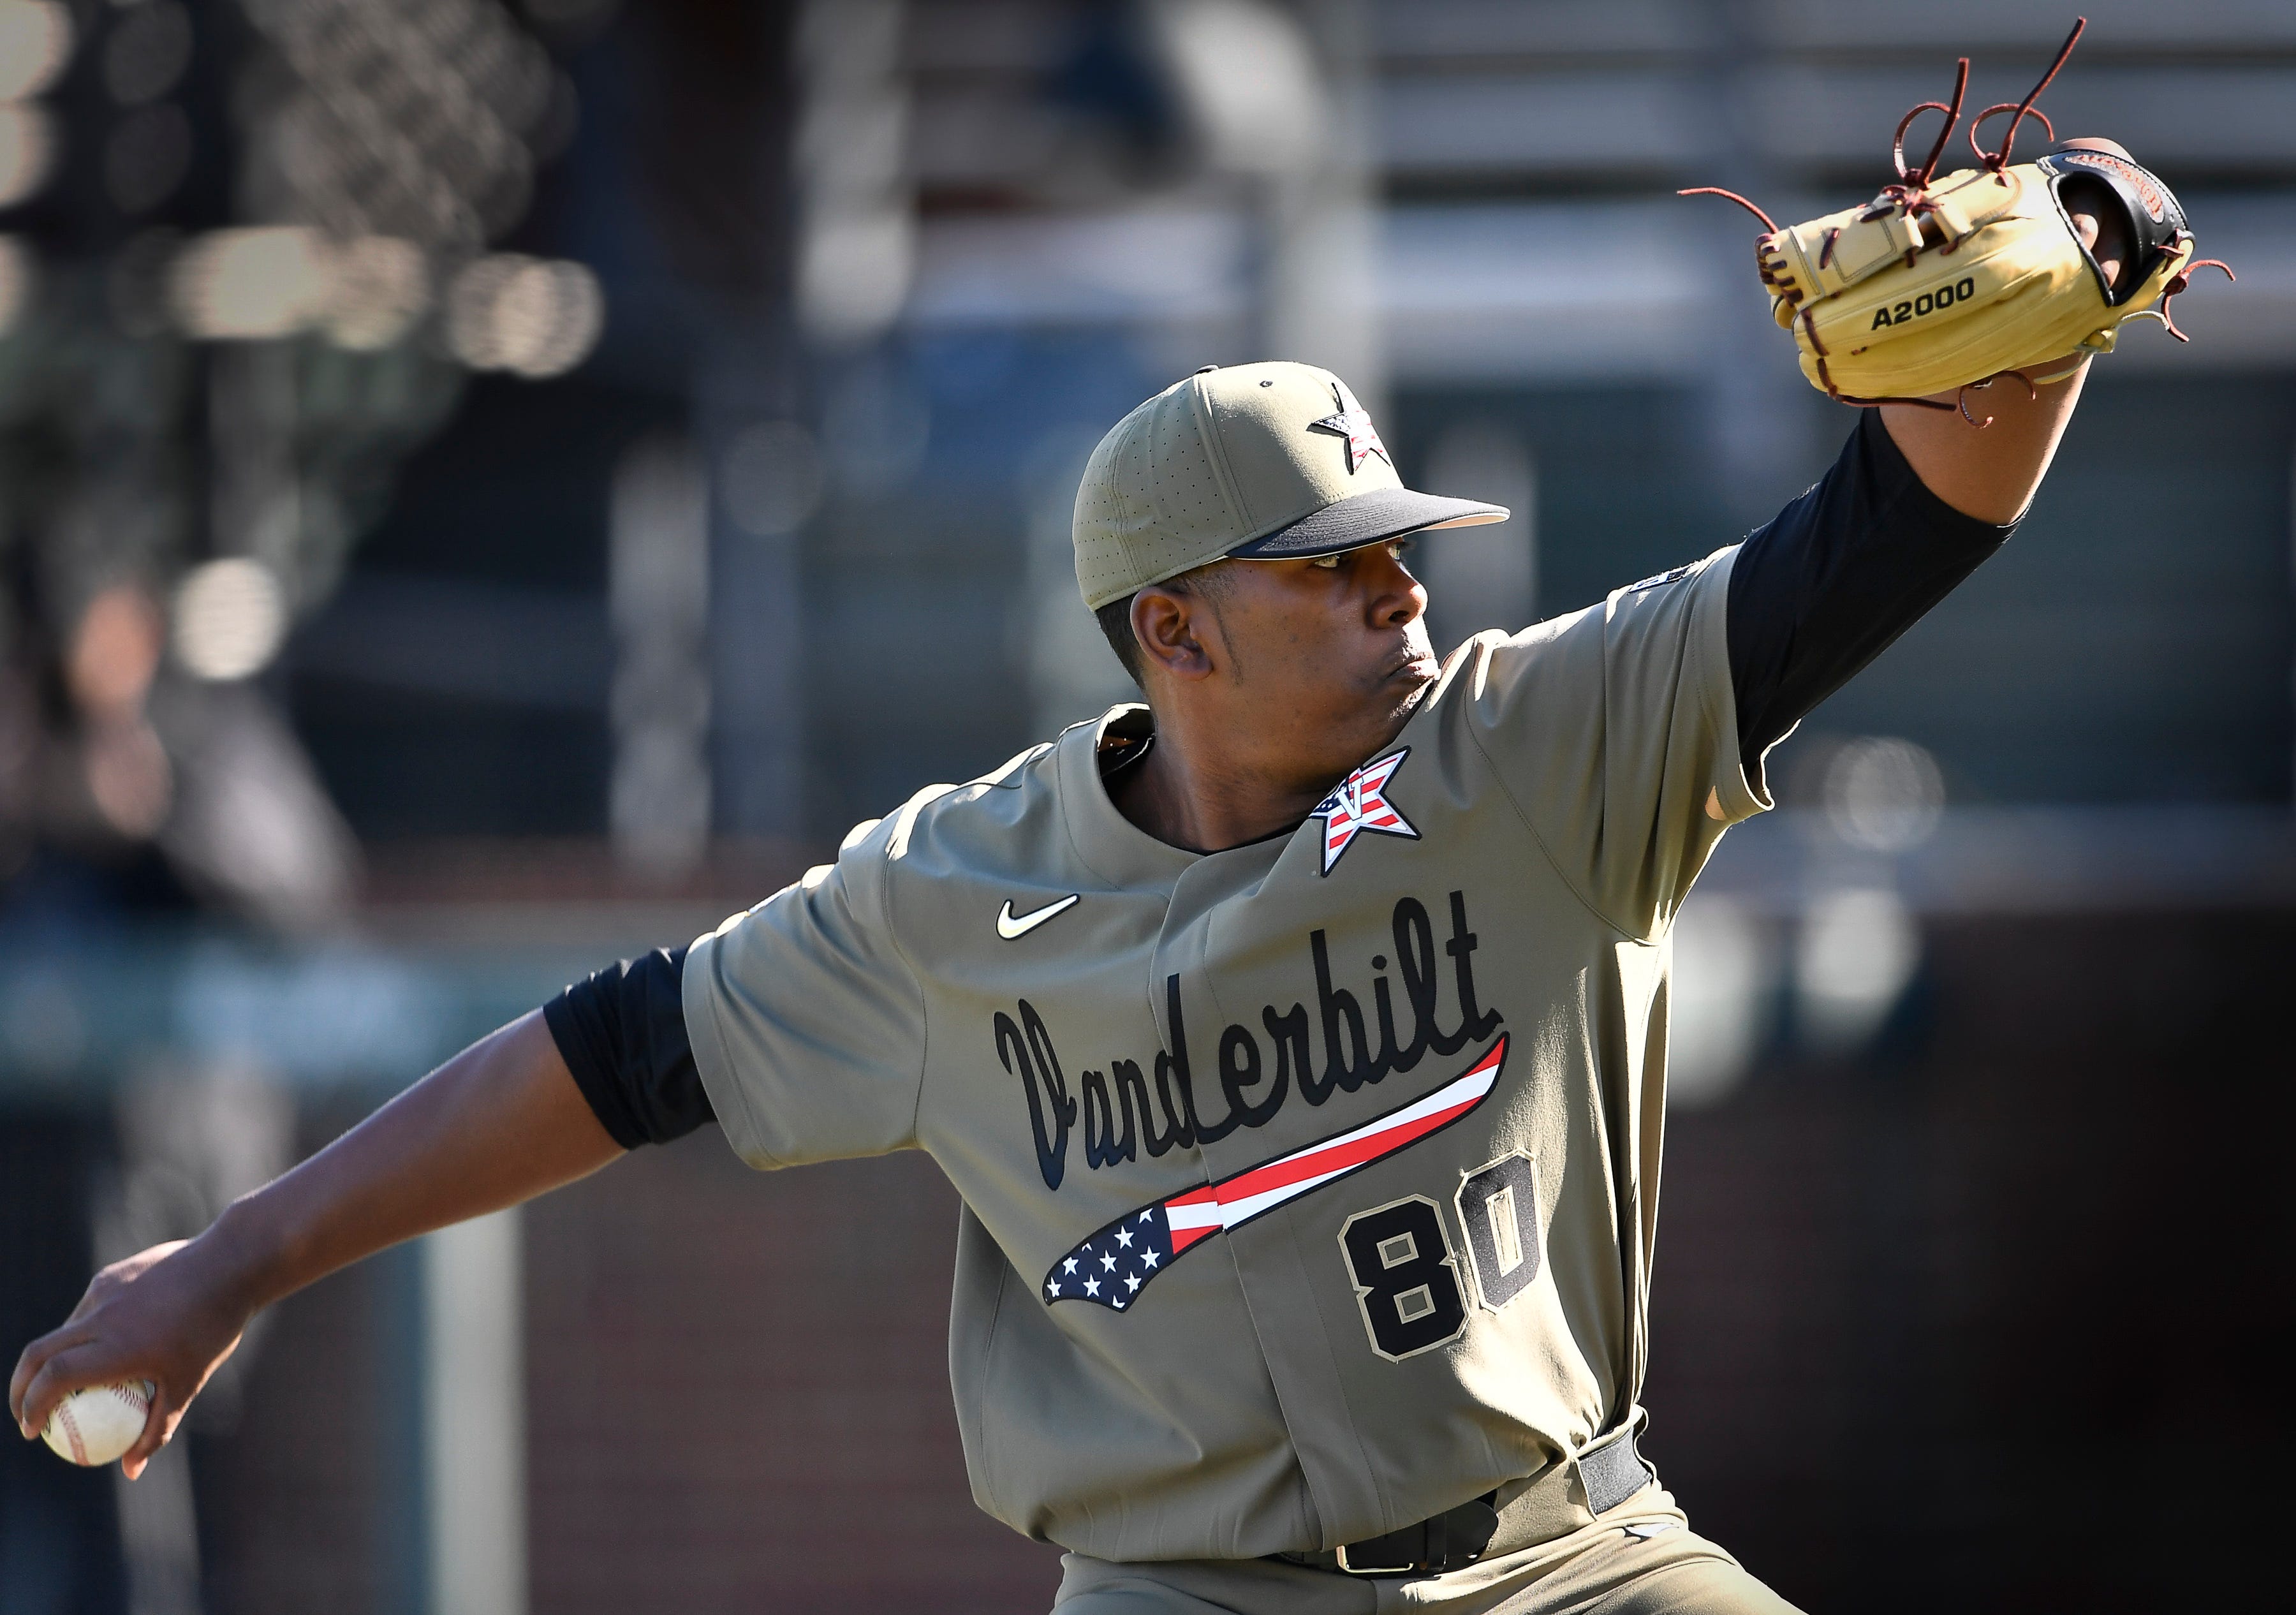 Why Vanderbilt baseball wears patriotic 